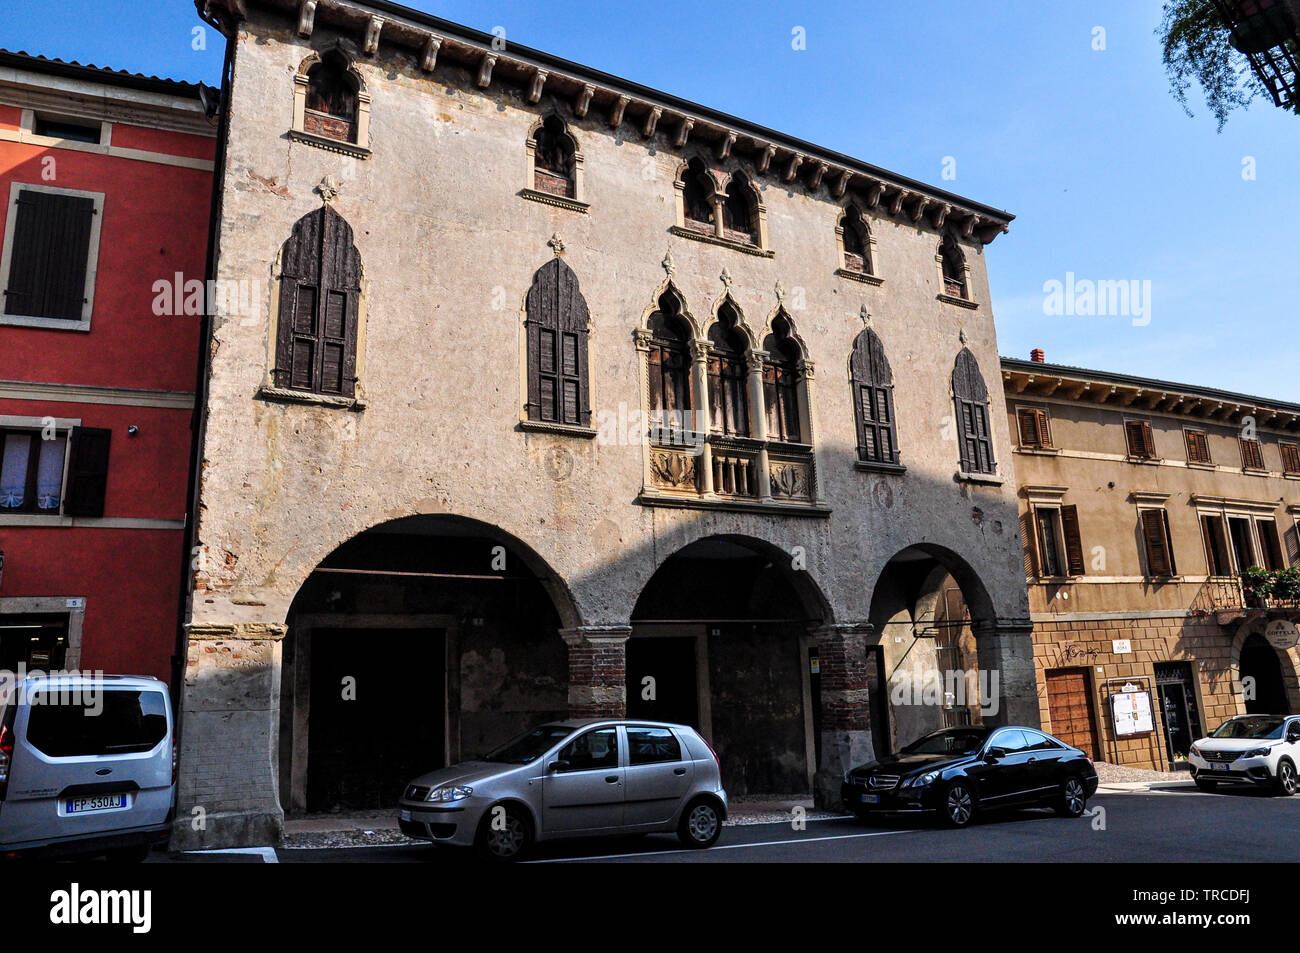 Vue de la quinzième siècle Palazzo Cavalli sur la Piazza dell'antenne, Soave, Italie Banque D'Images